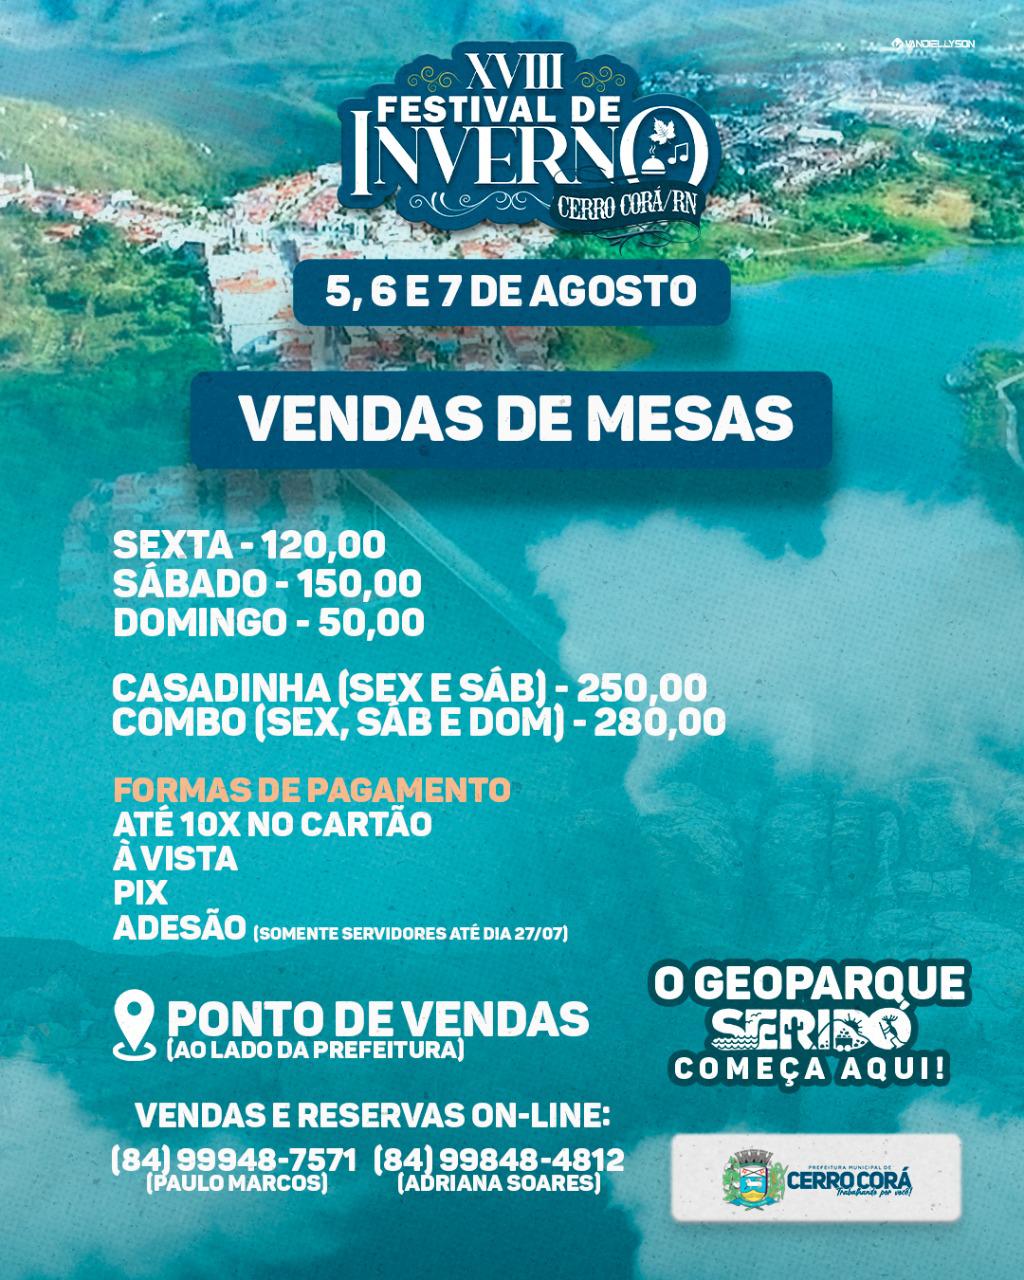 Iniciaram às vendas de mesas para o XVIII Festival de Inverno de Cerro Corá, confiram mapa